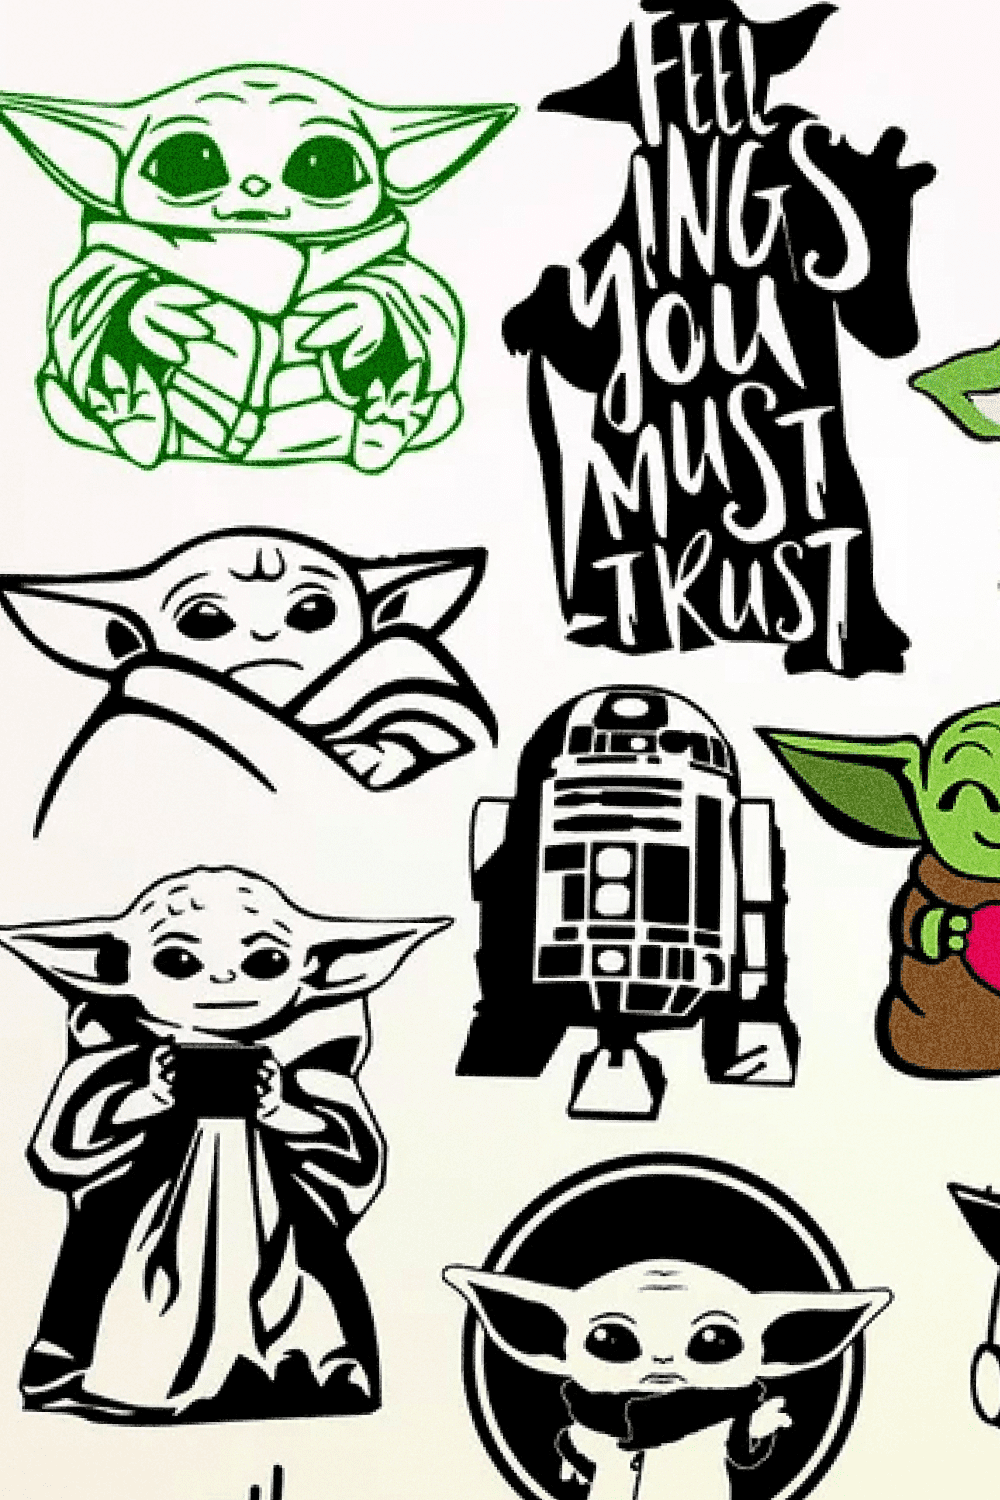 17 Impressive & Adorable Baby Yoda Tattoos | CafeMom.com